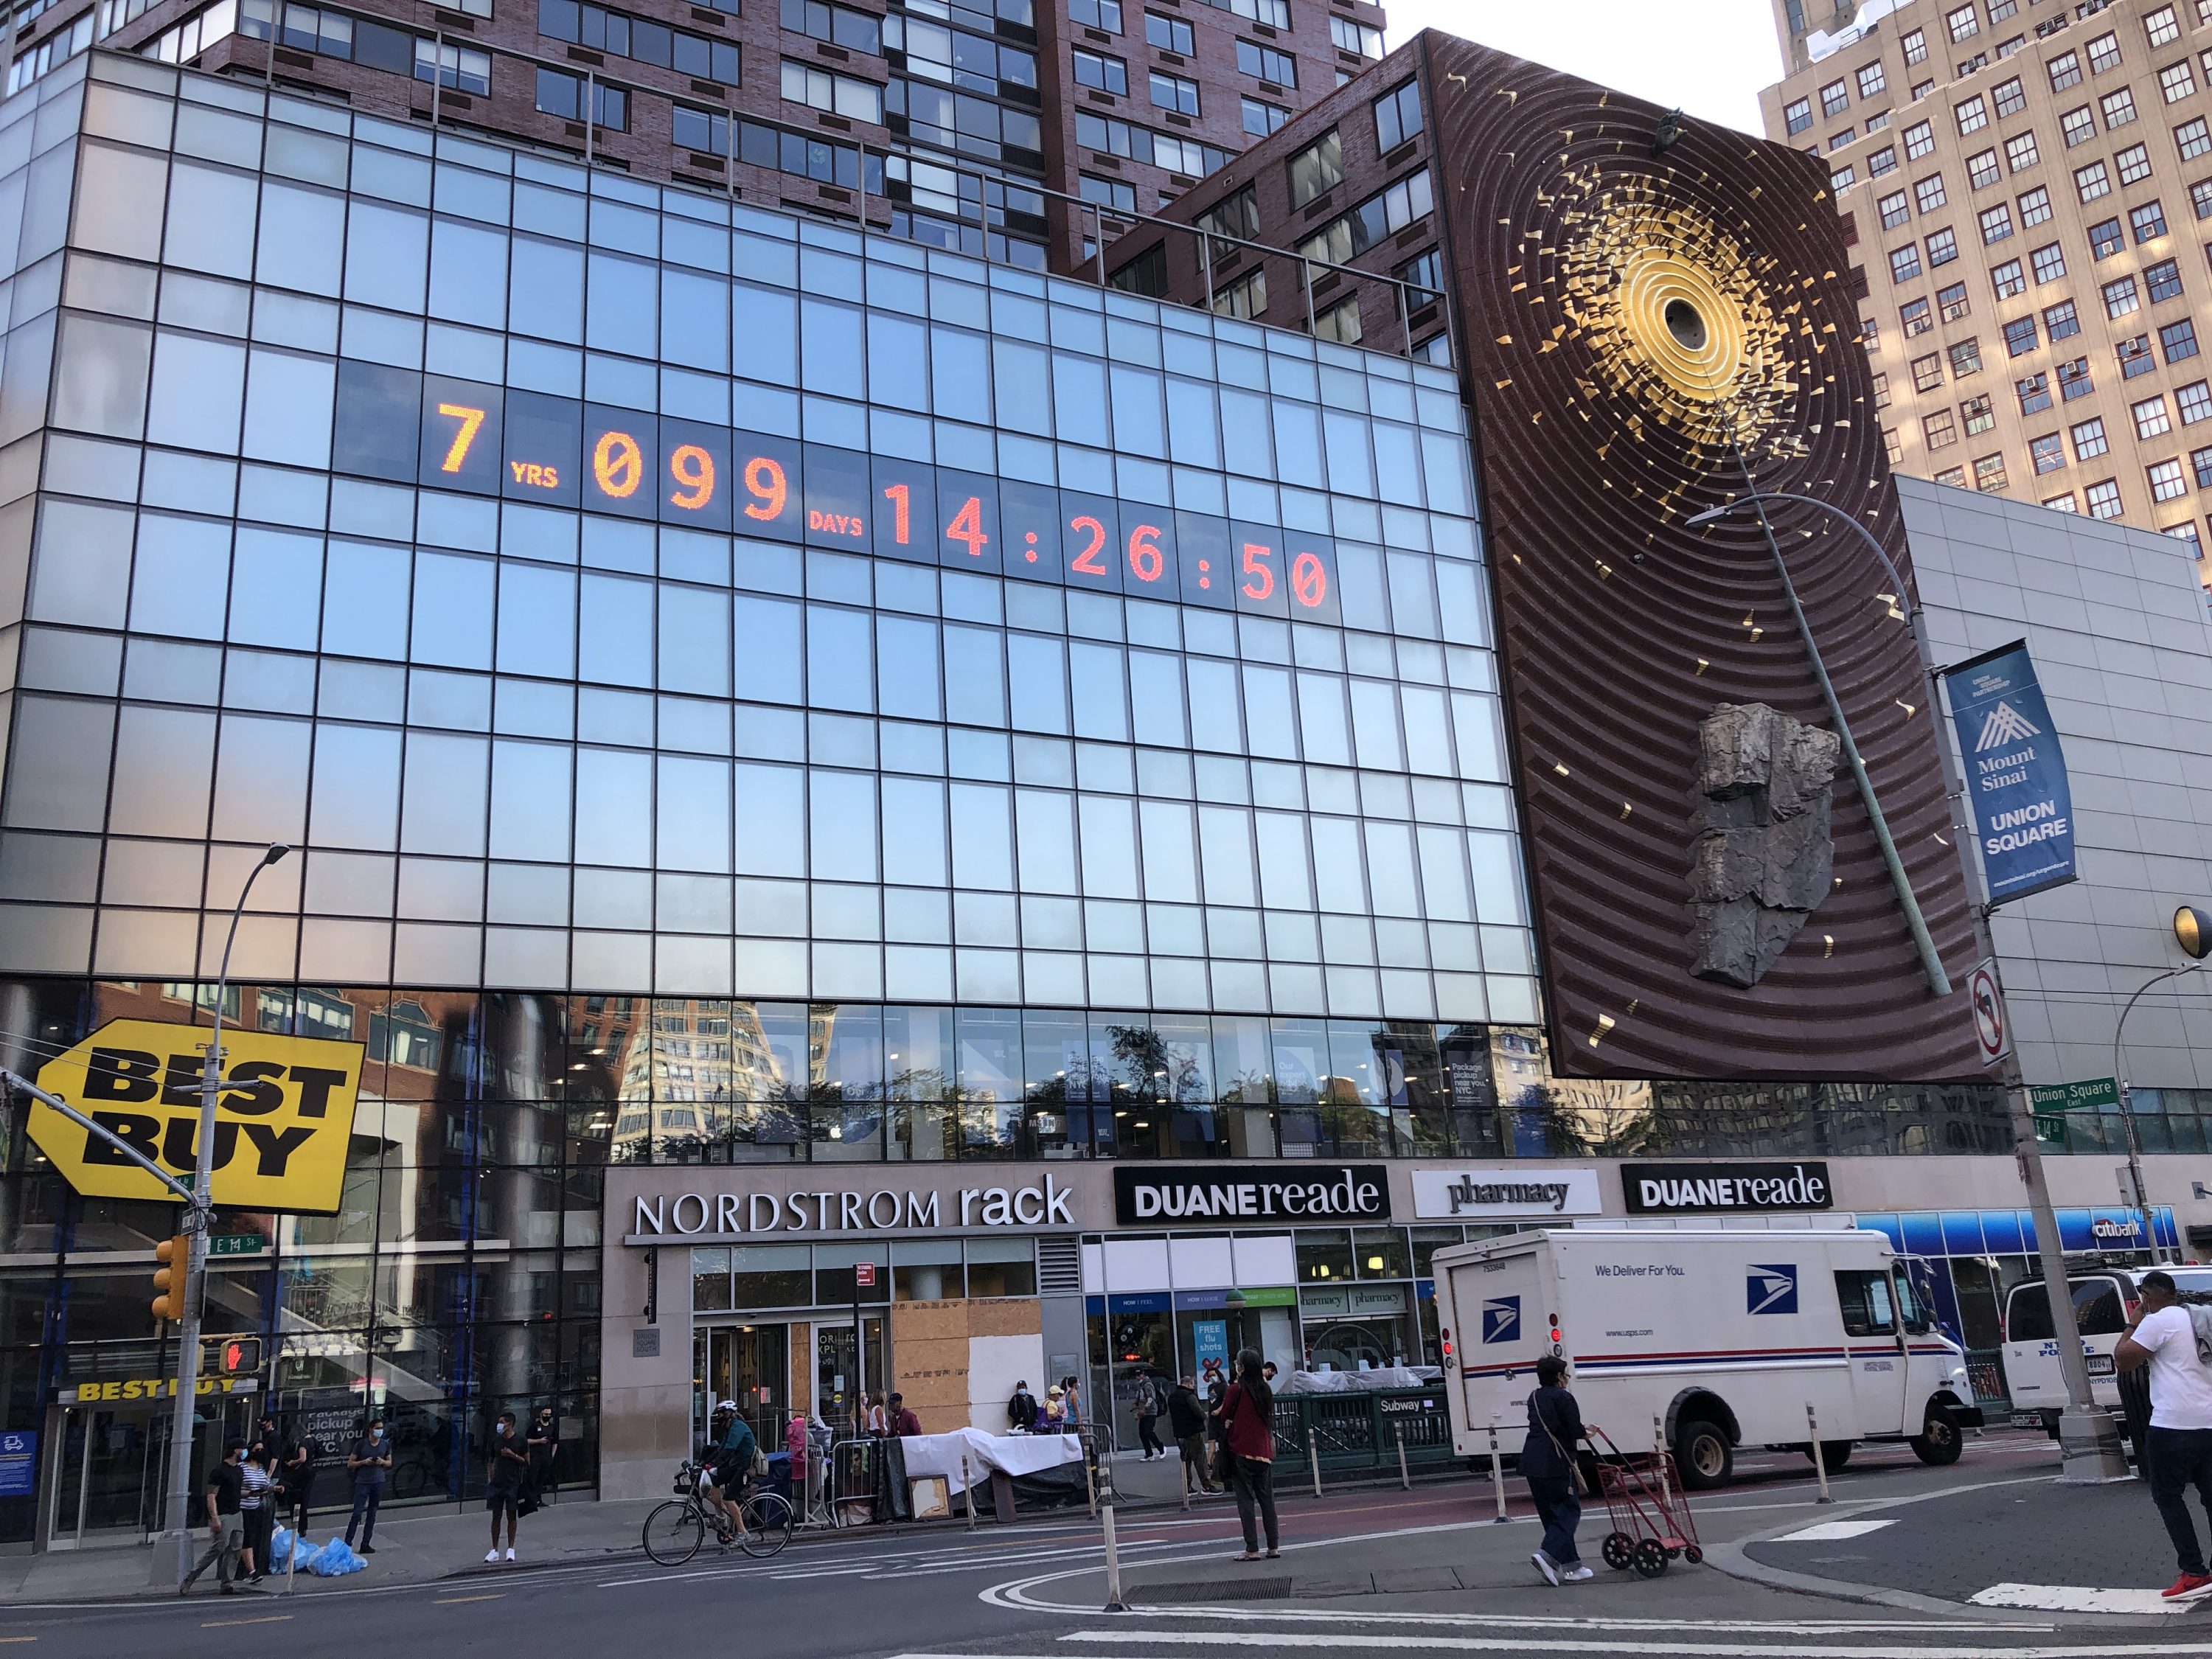 Climate Clock em exposição no Union Square, em NY (Foto: Sandra Colicino)